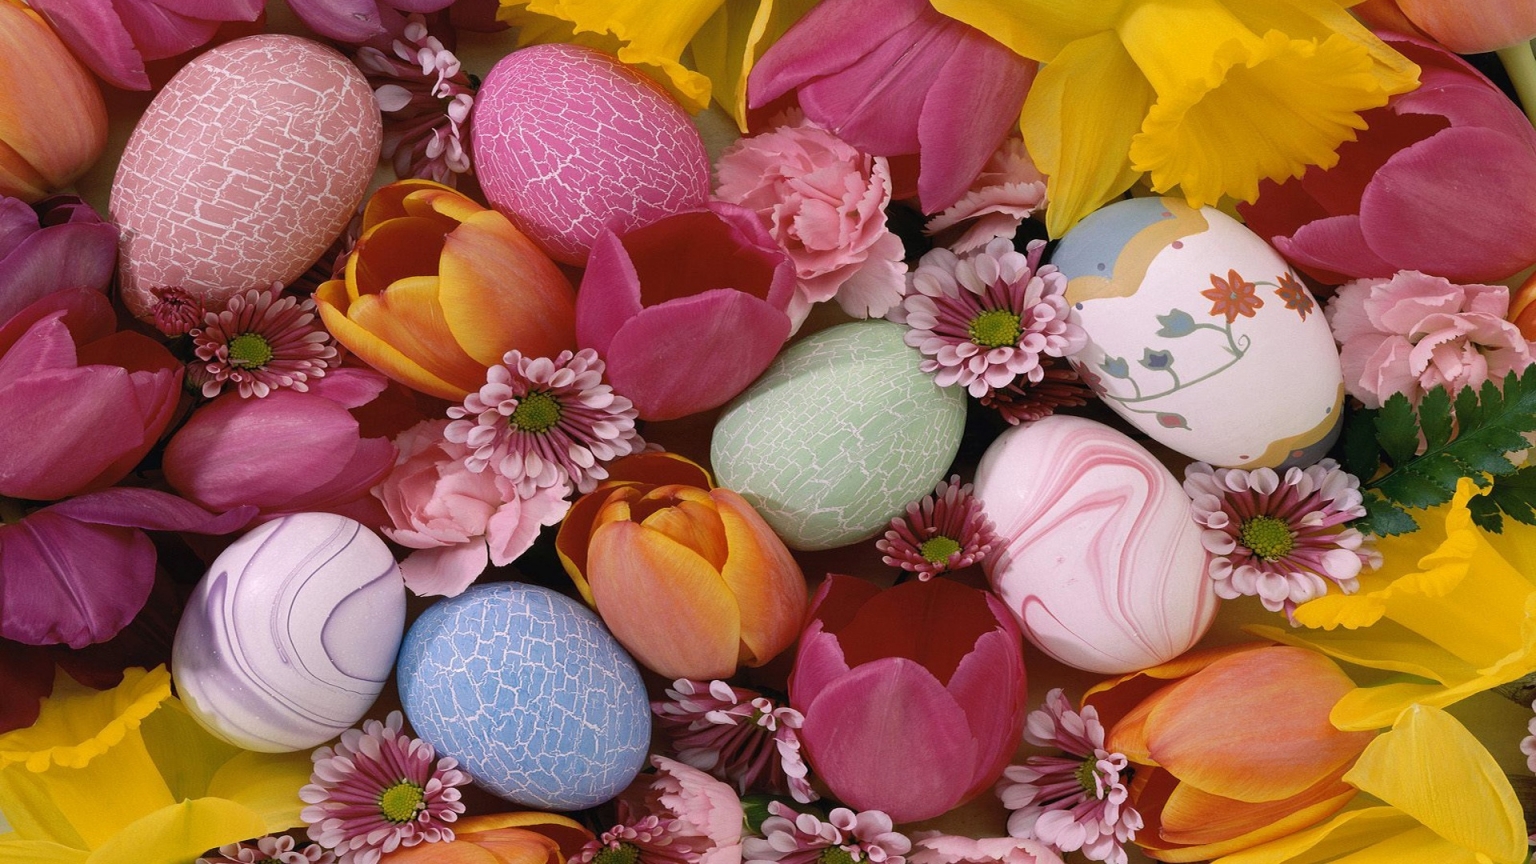 Easter Pastel Eggs for 1536 x 864 HDTV resolution